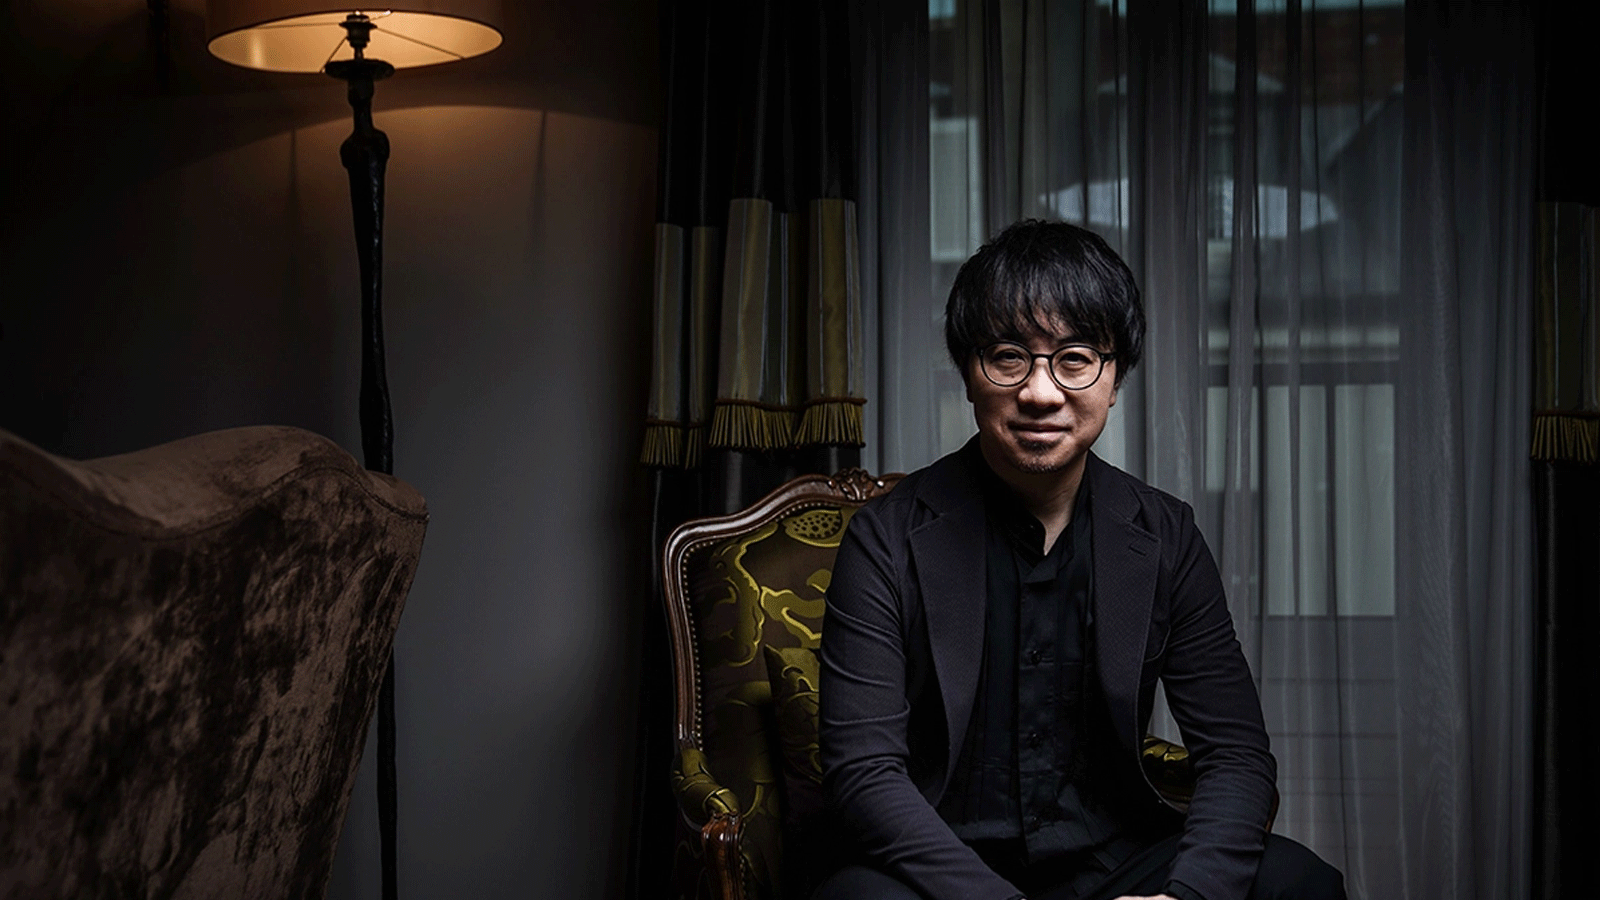 صورة للمخرج الياباني ماكوتو شينكاي التُقِطَت في باريس بتاريخ 11 كانون الأول\ ديسمبر 2019